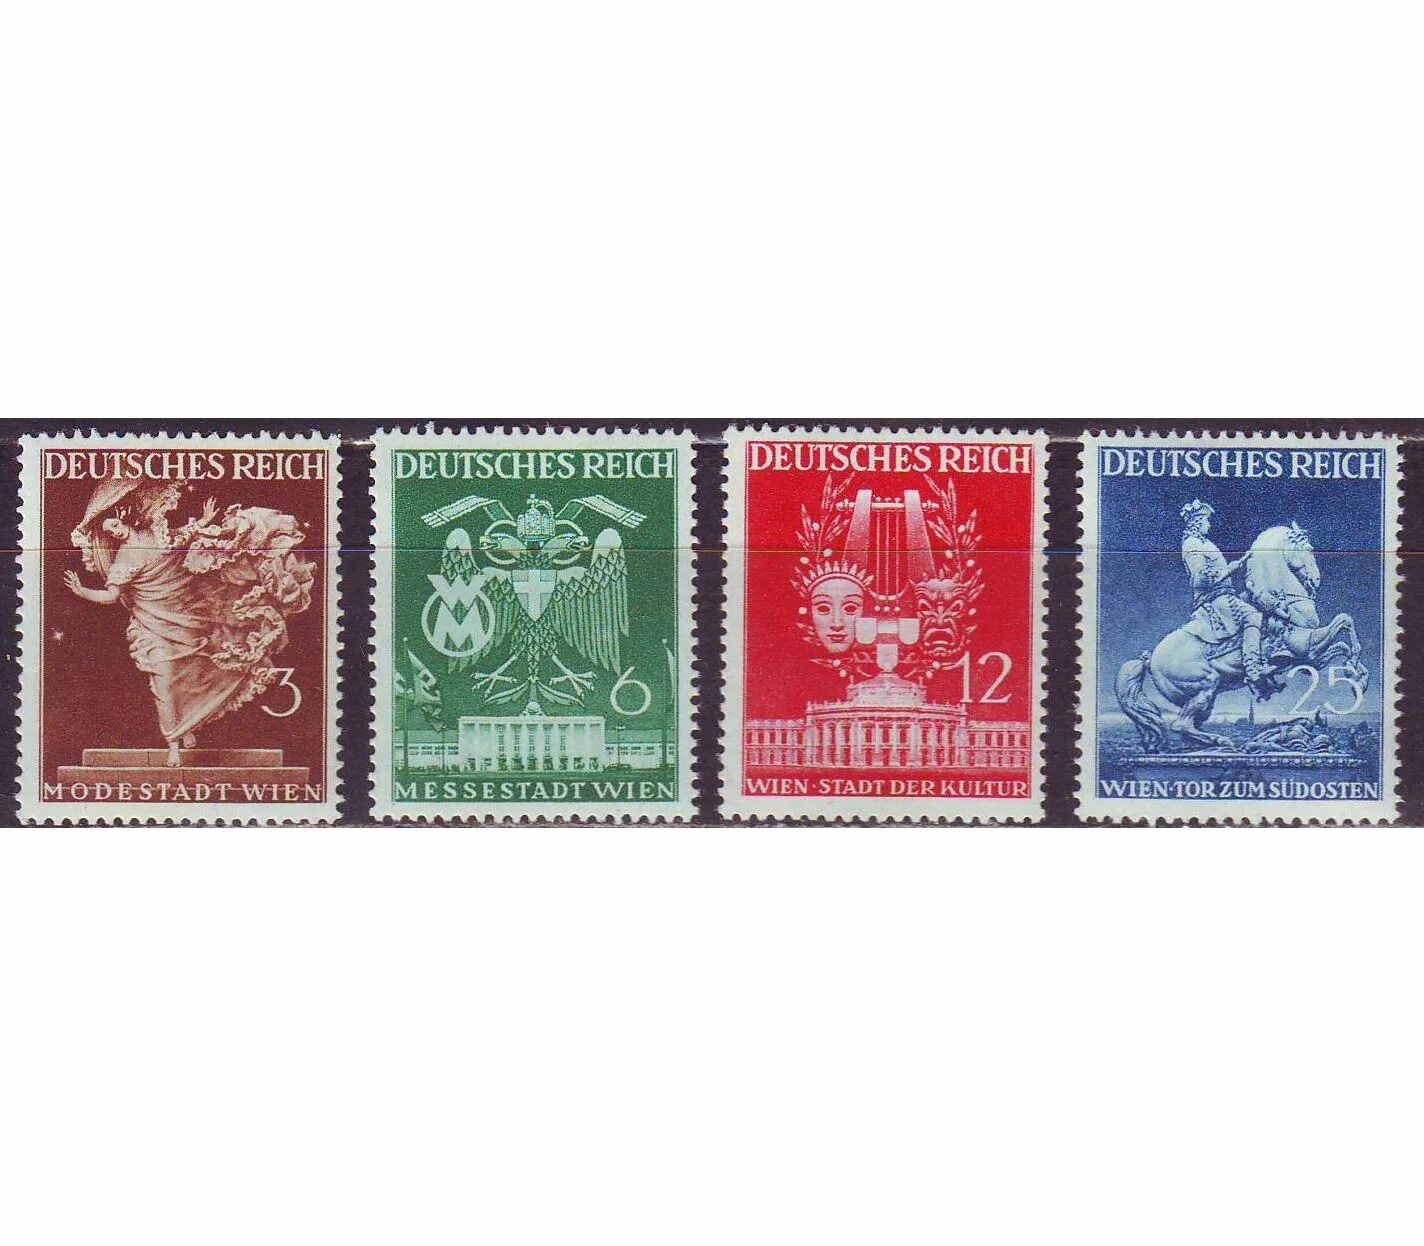 Немецкие почтовые марки третьего рейха. Марка Рейх Почтовая Дойч Messestadt Wien. Почтовые марки Германия, третий Рейх 1942 день почтовой марки. Бундес марки 3 рейха.